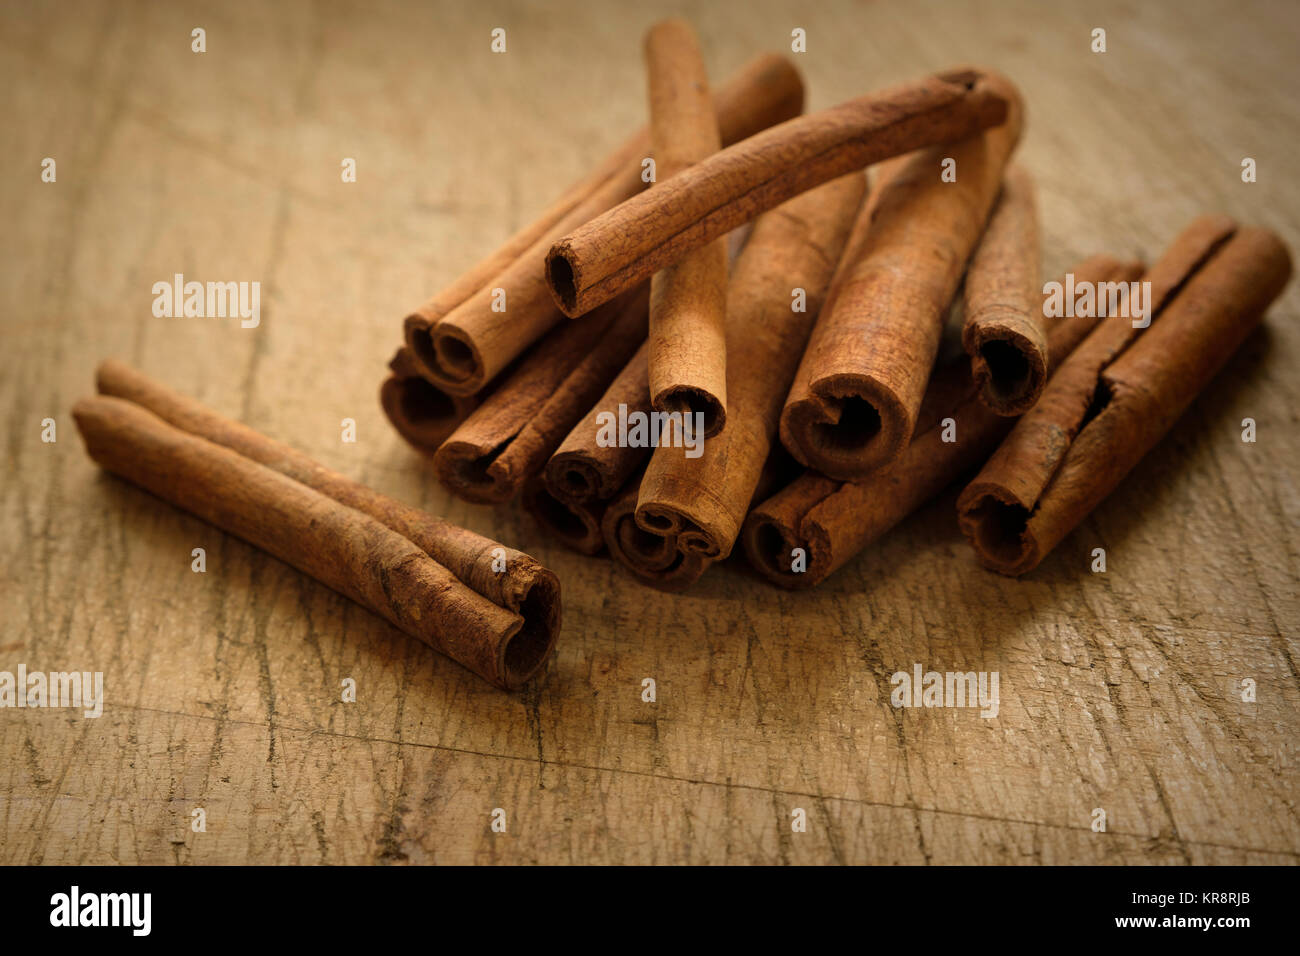 Les bâtons de cannelle sur table en bois Banque D'Images